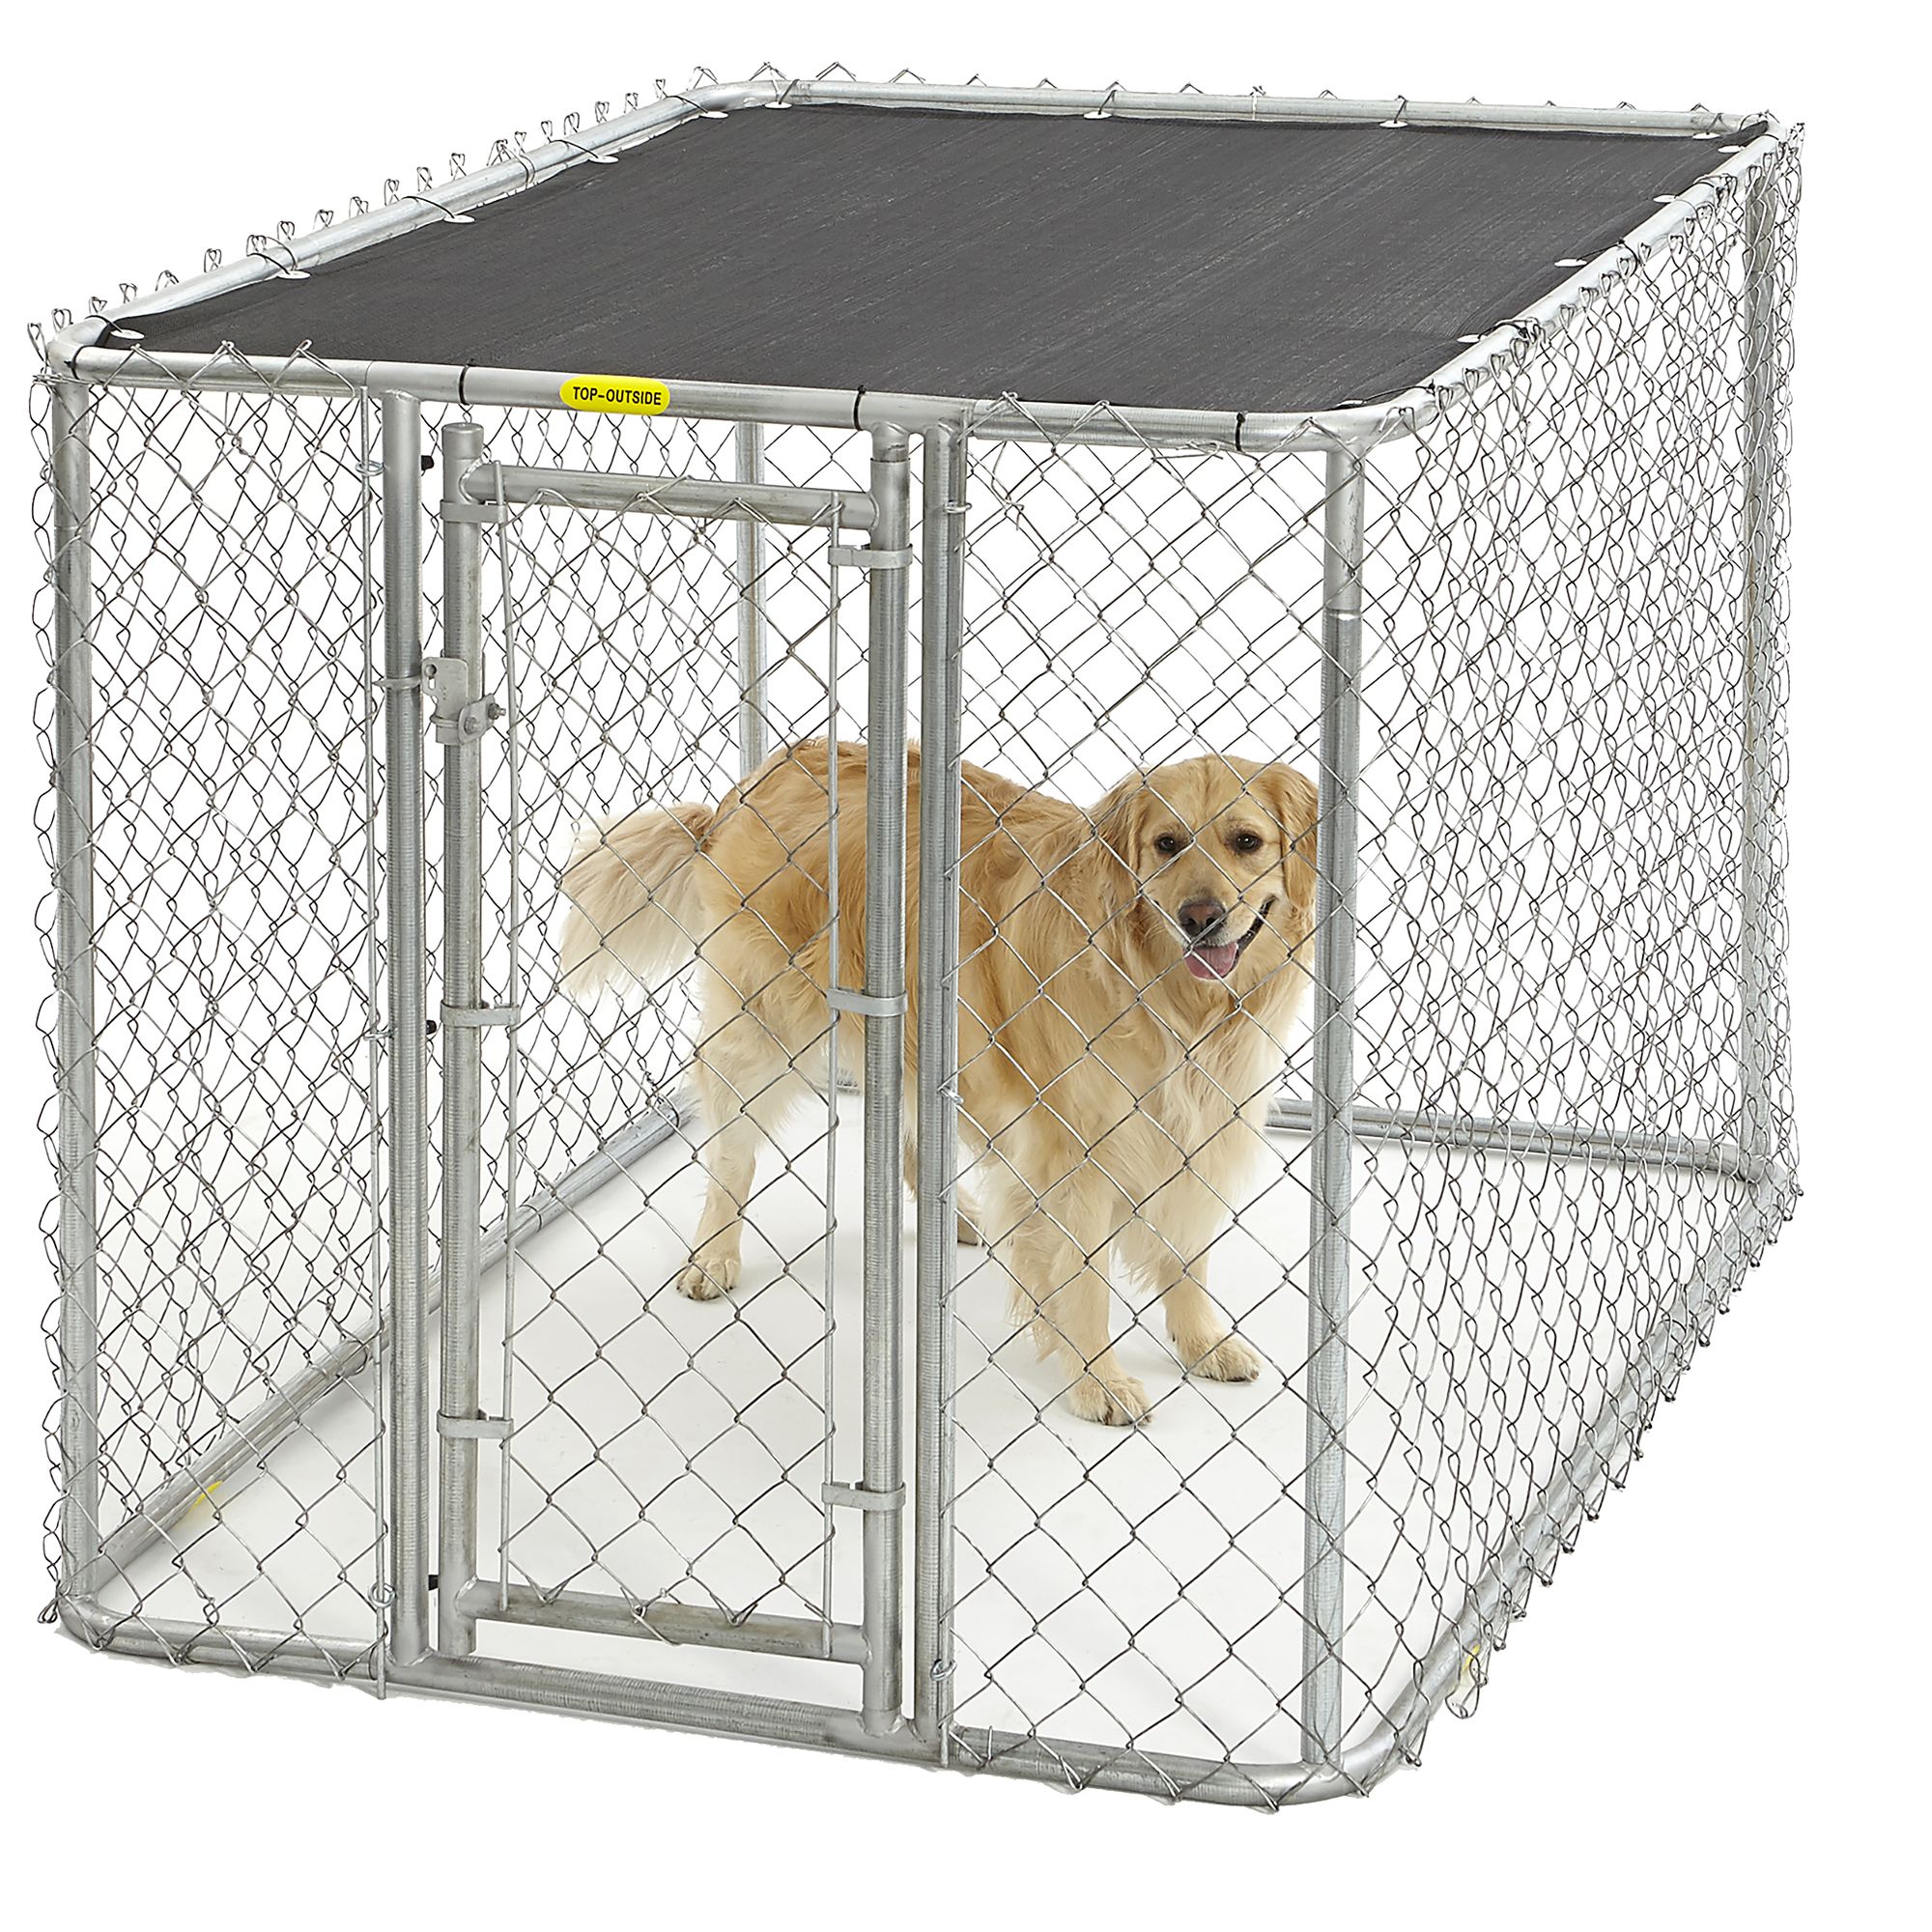 petsmart dog kennels for outside